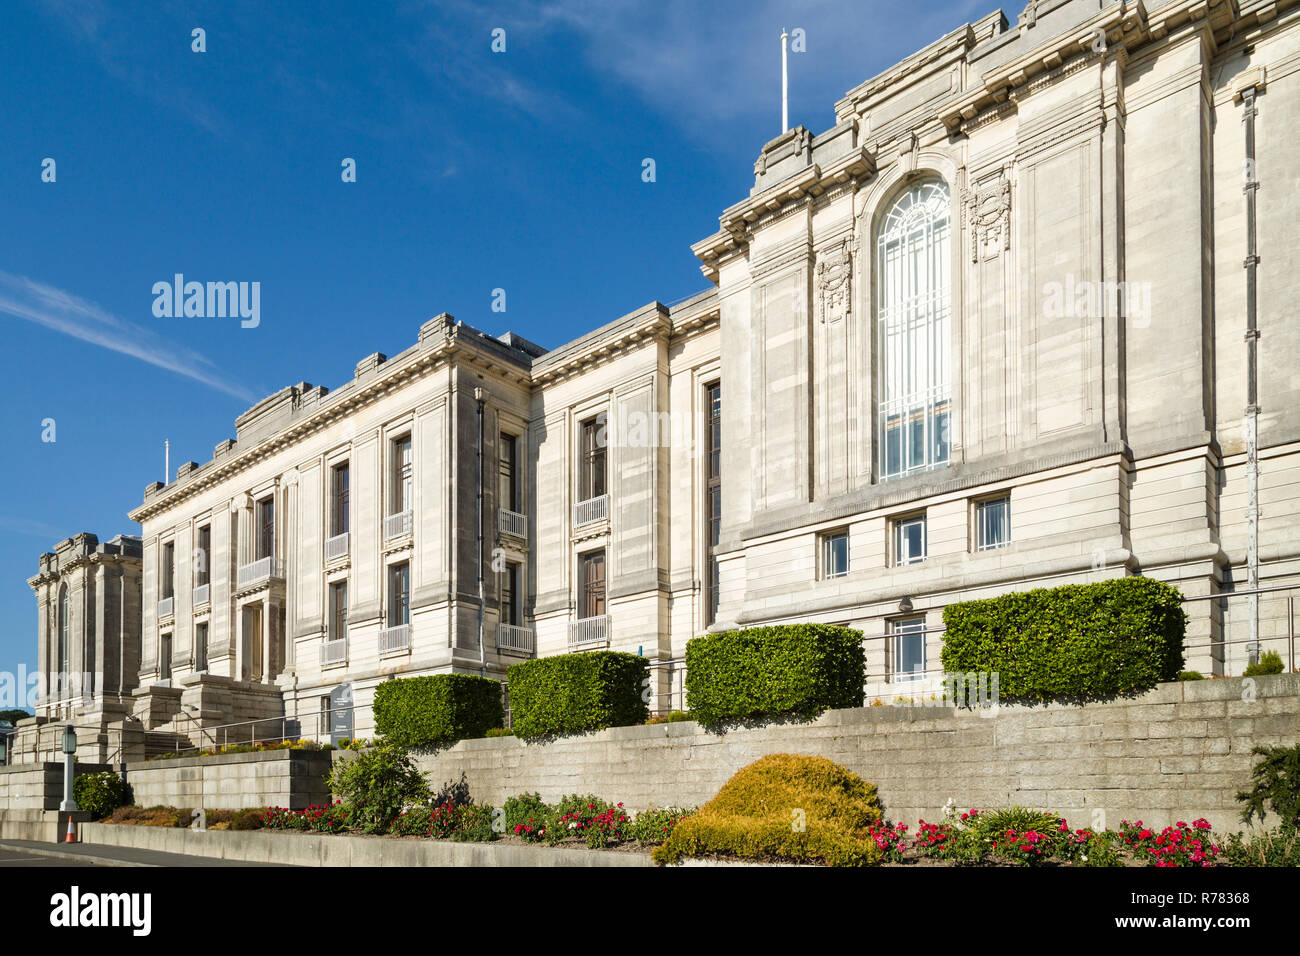 La Biblioteca nazionale del Galles, Aberystwyth, fondata nel 1907, la rinascita greca edificio da Sidney Greenslade completata nel 1915. Foto Stock